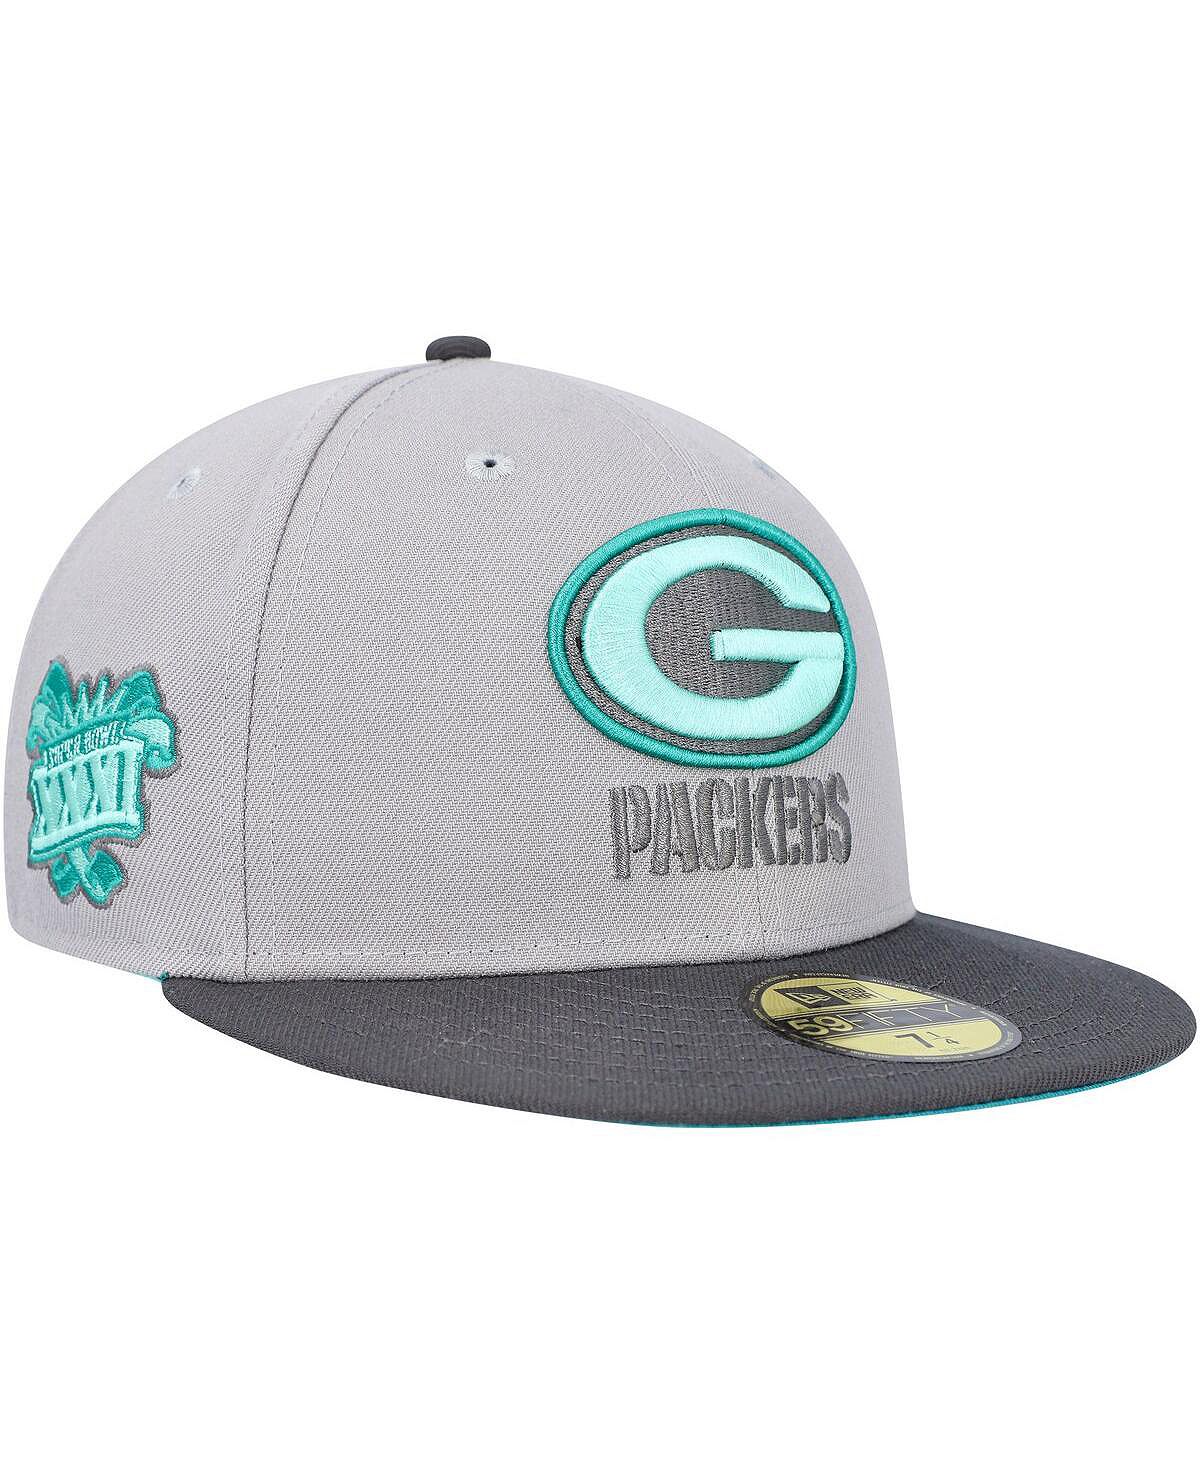 Мужская серо-графитовая приталенная шляпа Green Bay Packers Aqua Pop 59FIFTY New Era